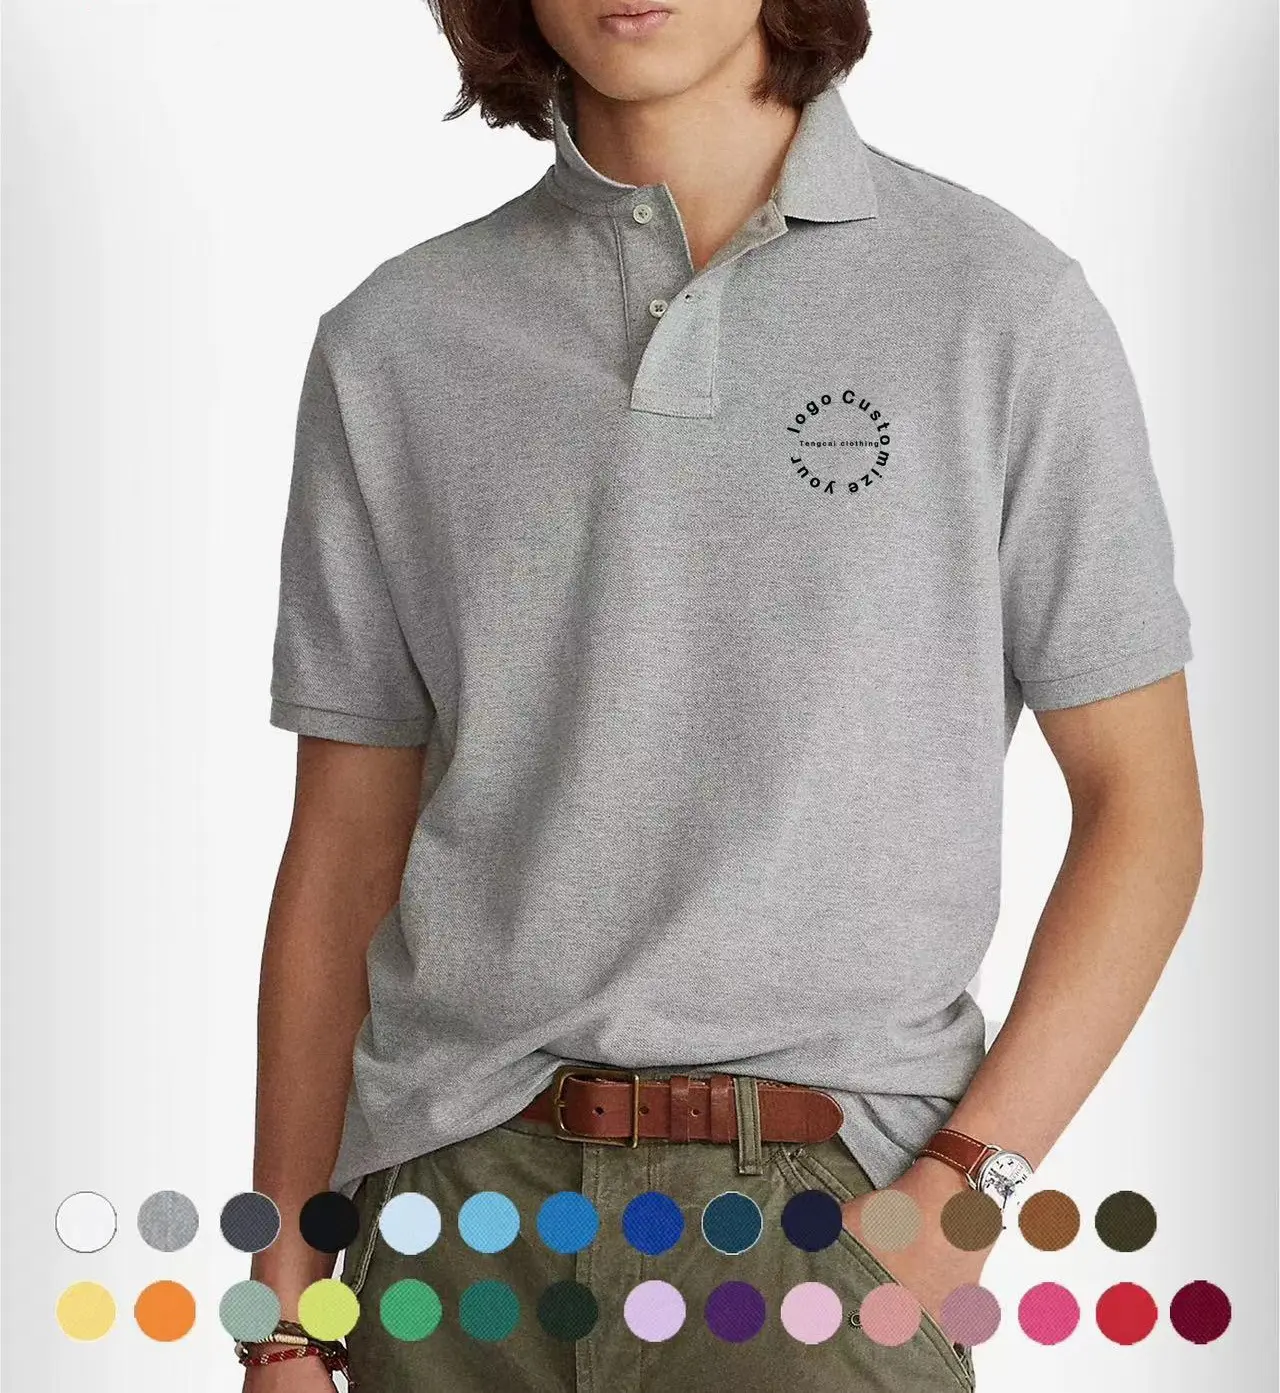 Moda özel nakış logosu sıcak satış erkek yüksek kalite Polo GÖMLEK katı renk tulum Polyester adam rahat Golf Polo t-bok